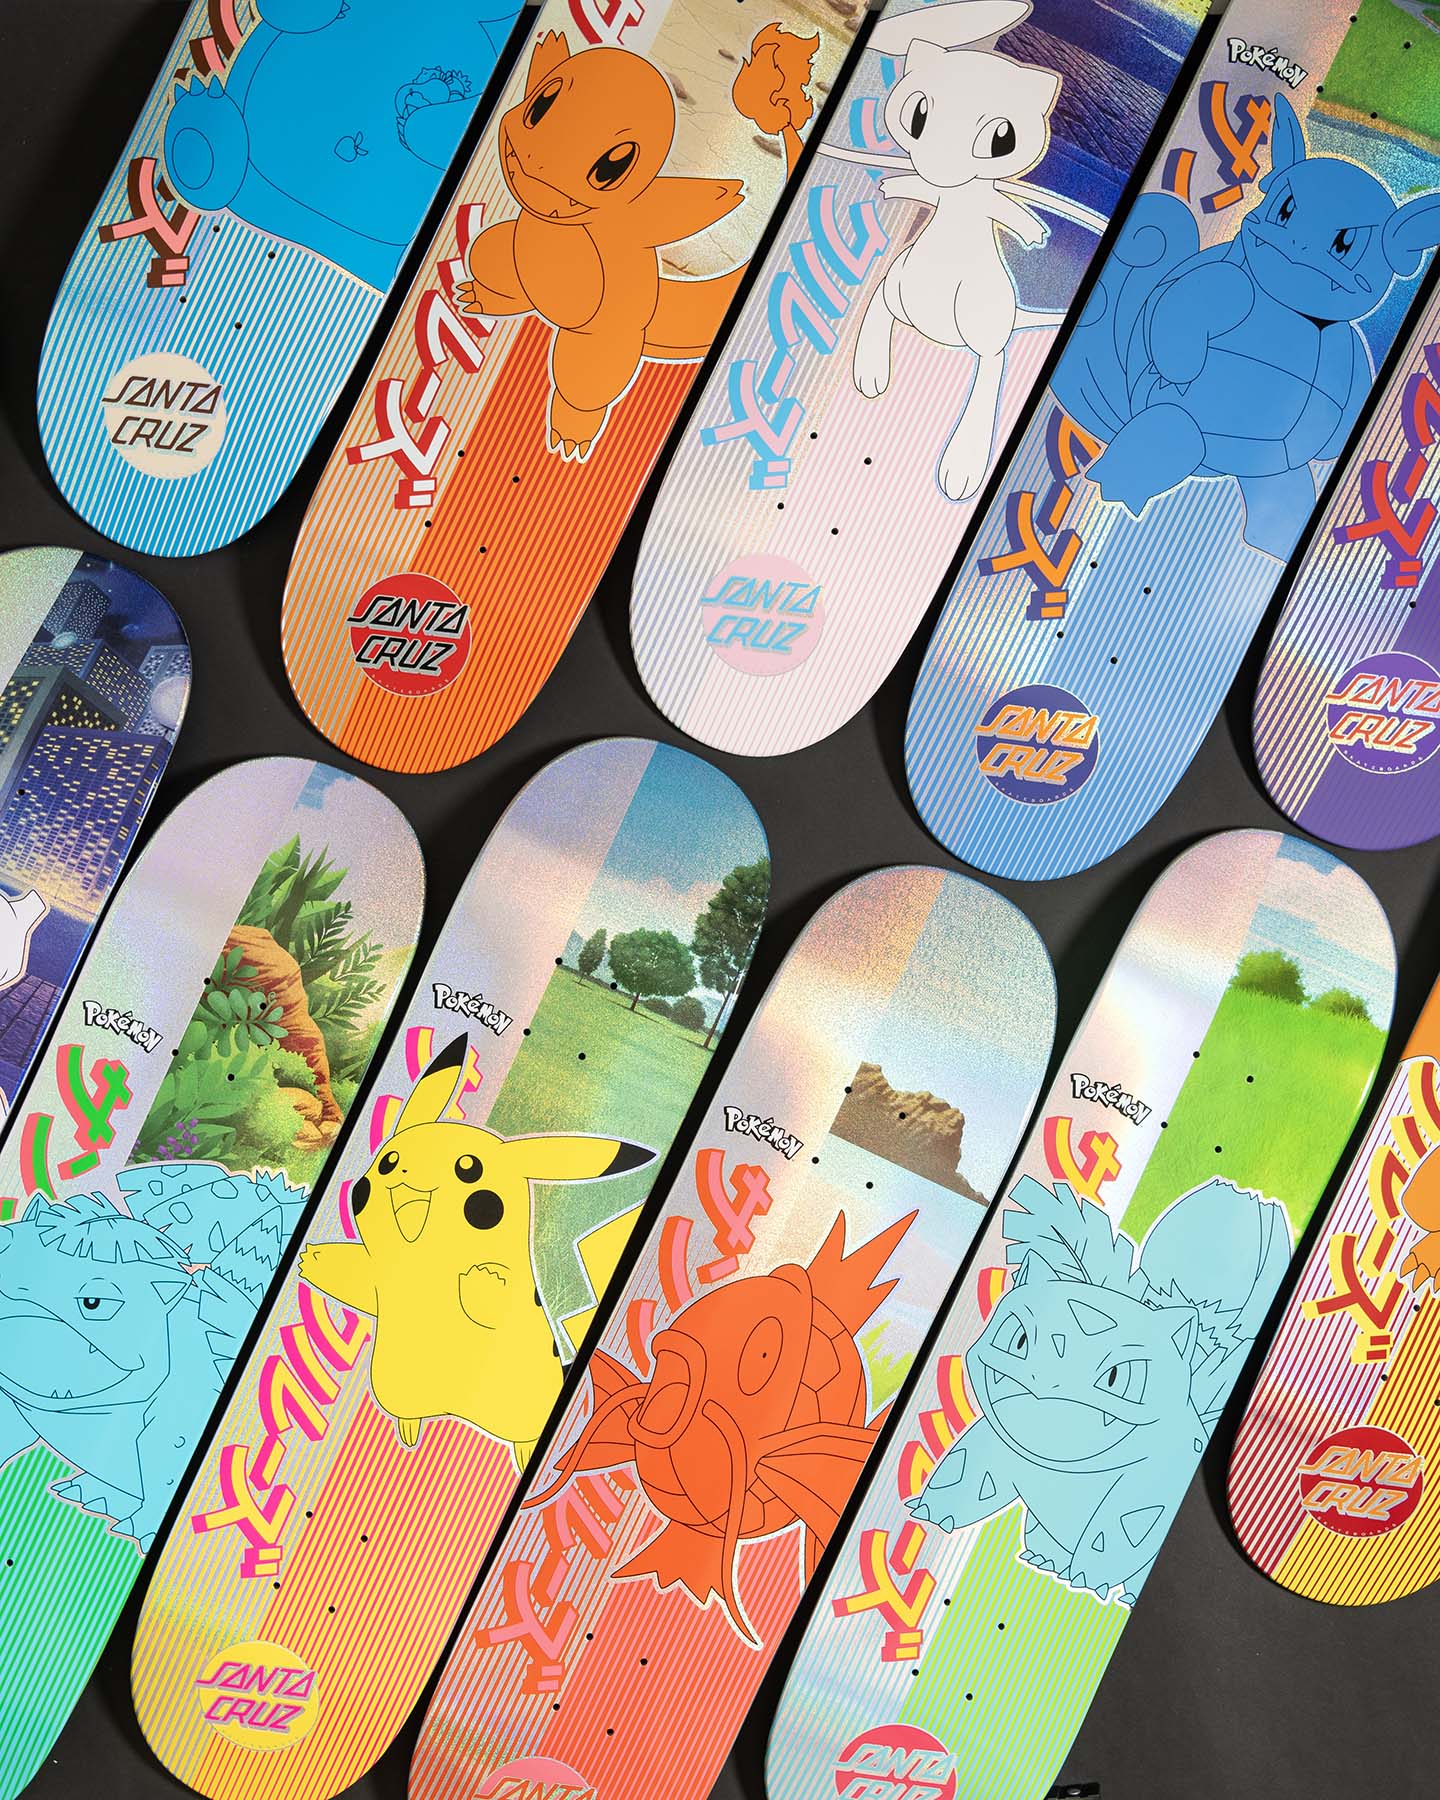 Santa Cruz & Pokemon's collaborative skateboards